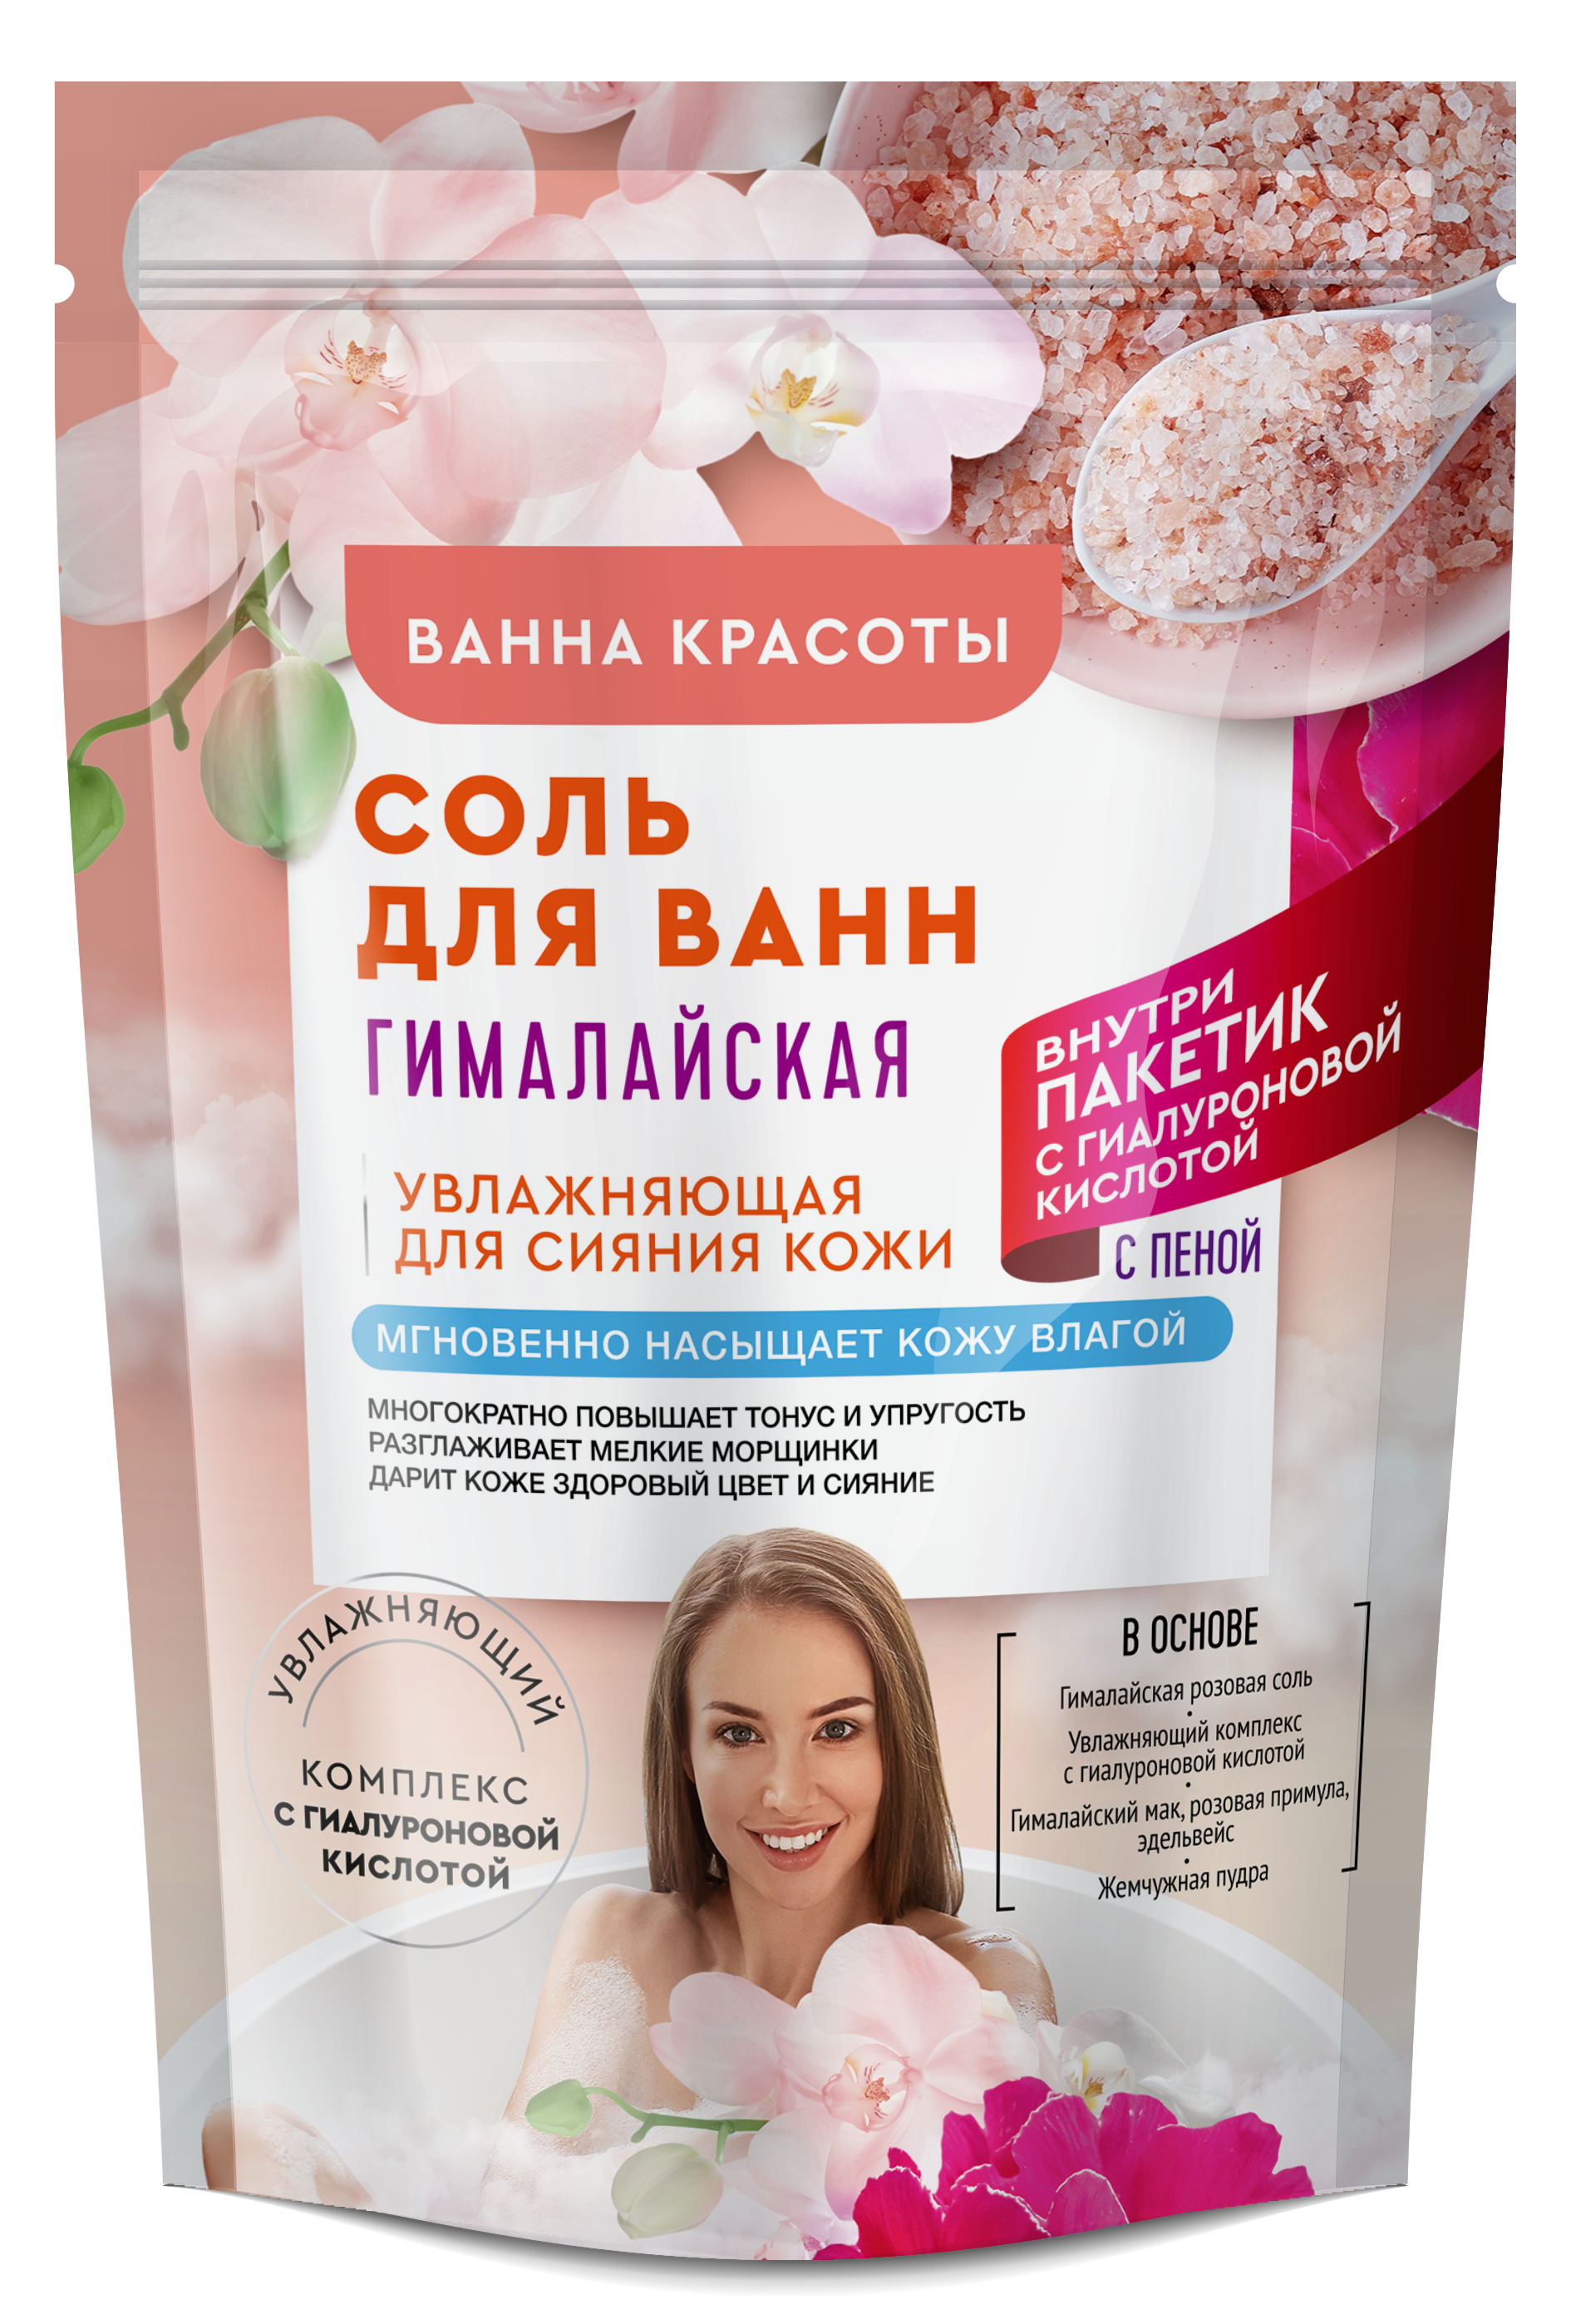 Соль для ванны Ванна Красоты Гималайская 500гр - в интернет-магазине tut-beauty.by